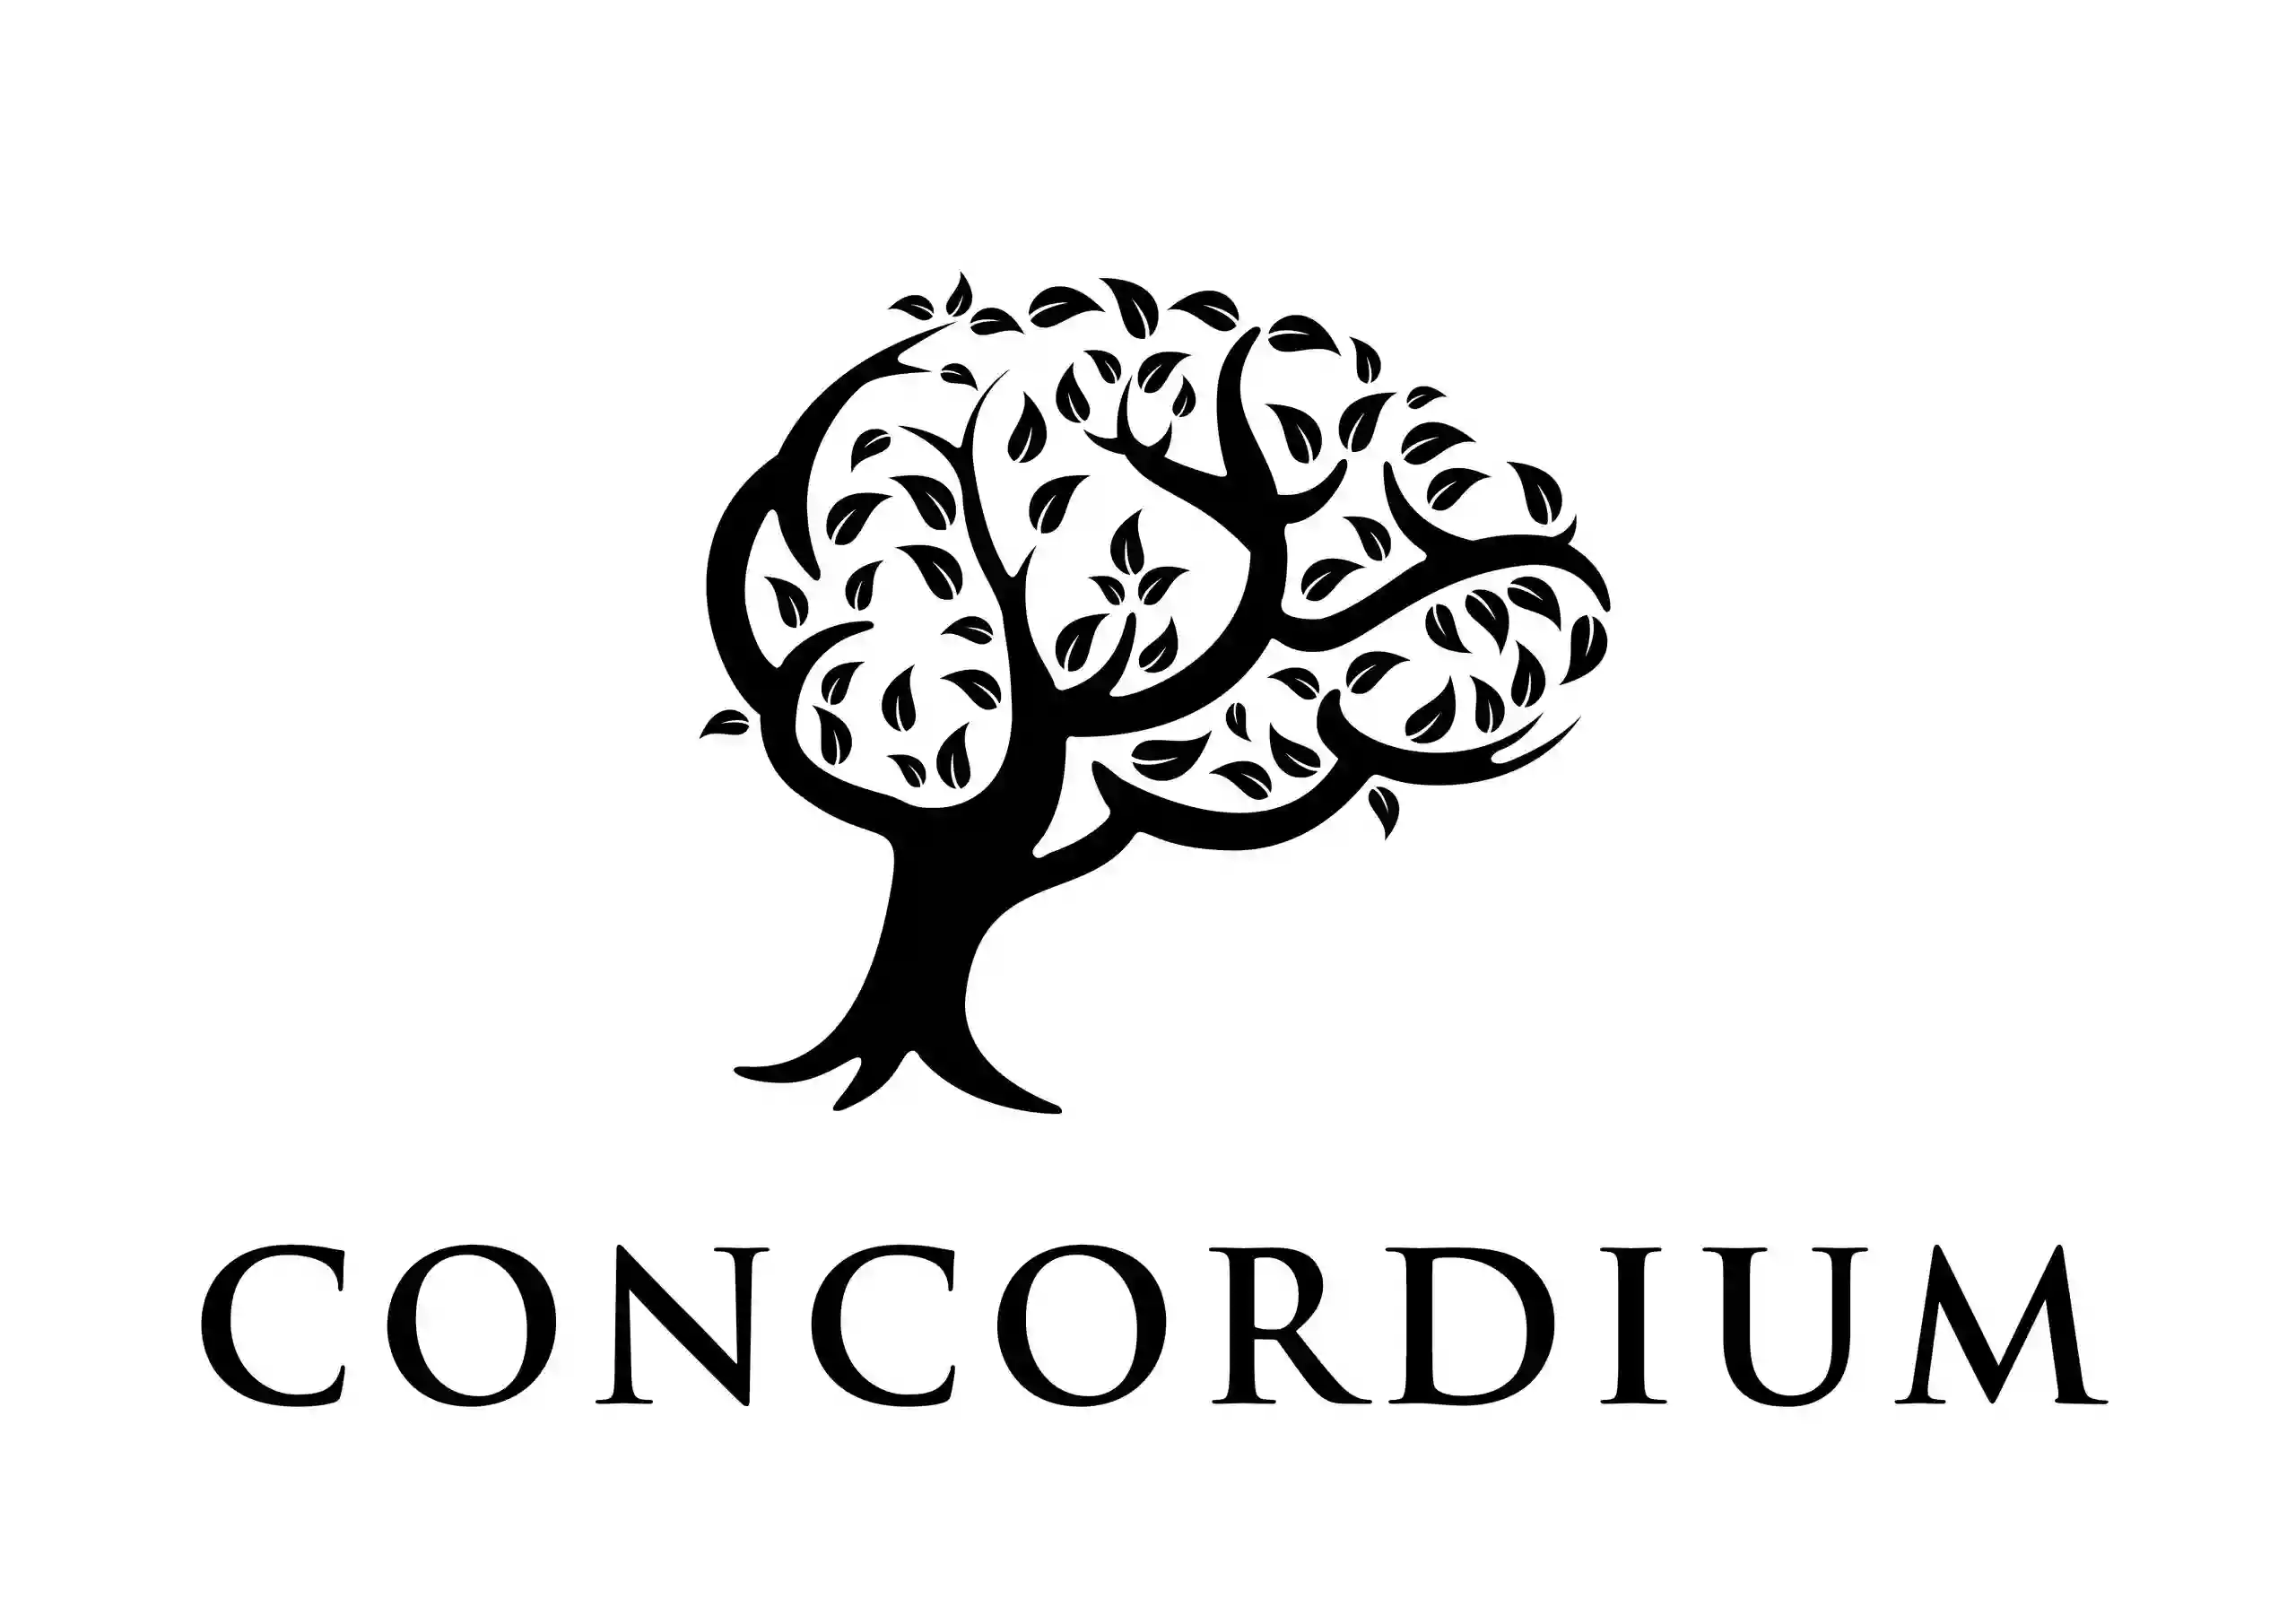 The Concordium